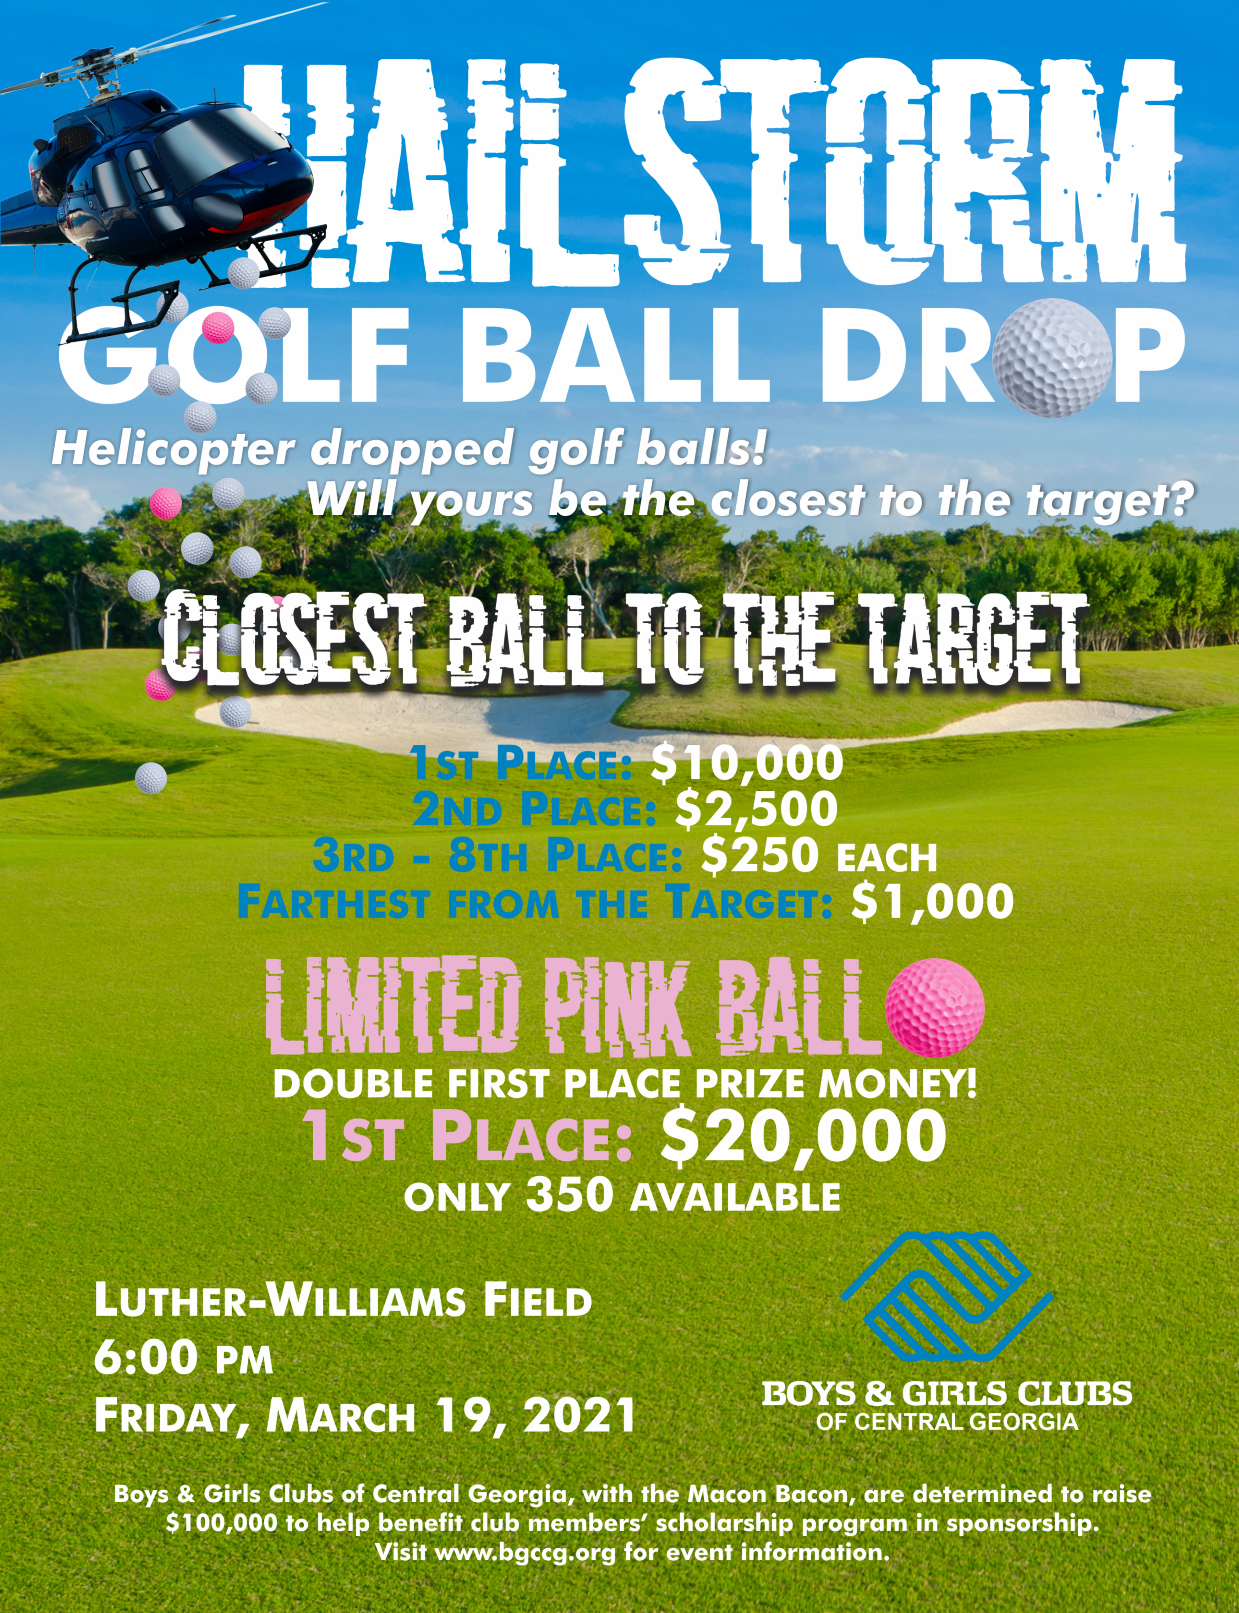 MFT Hailstorm Golf Ball Drop